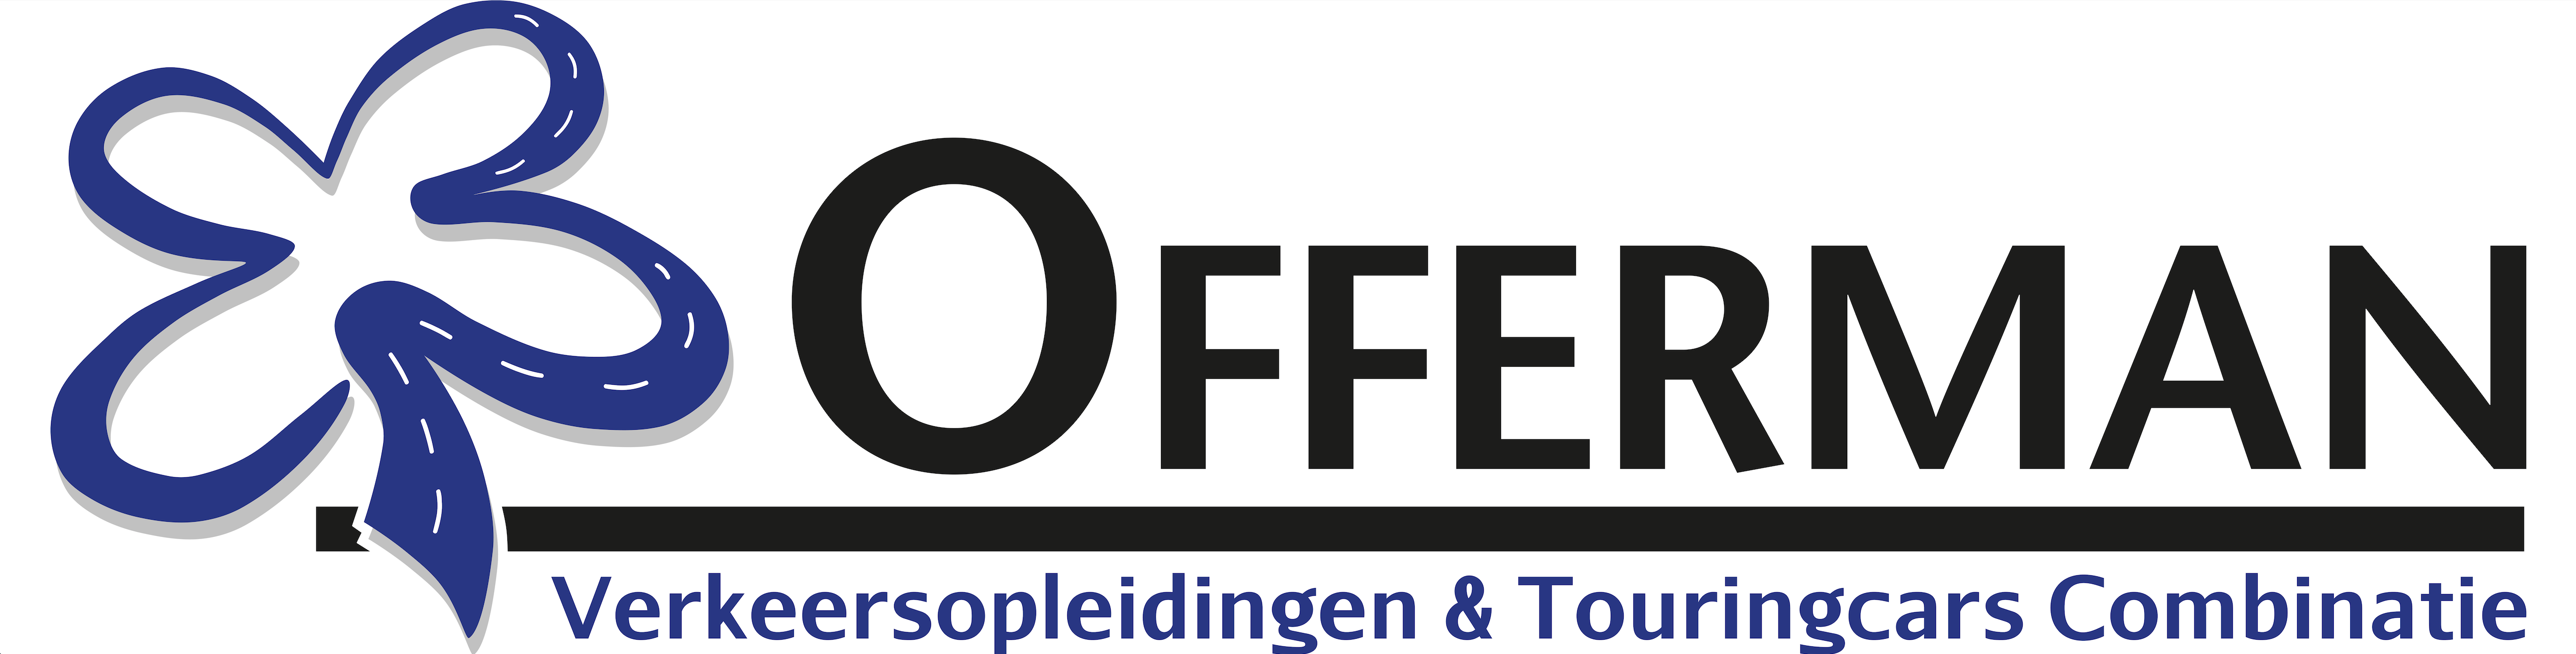 Logo VTC-Offerman